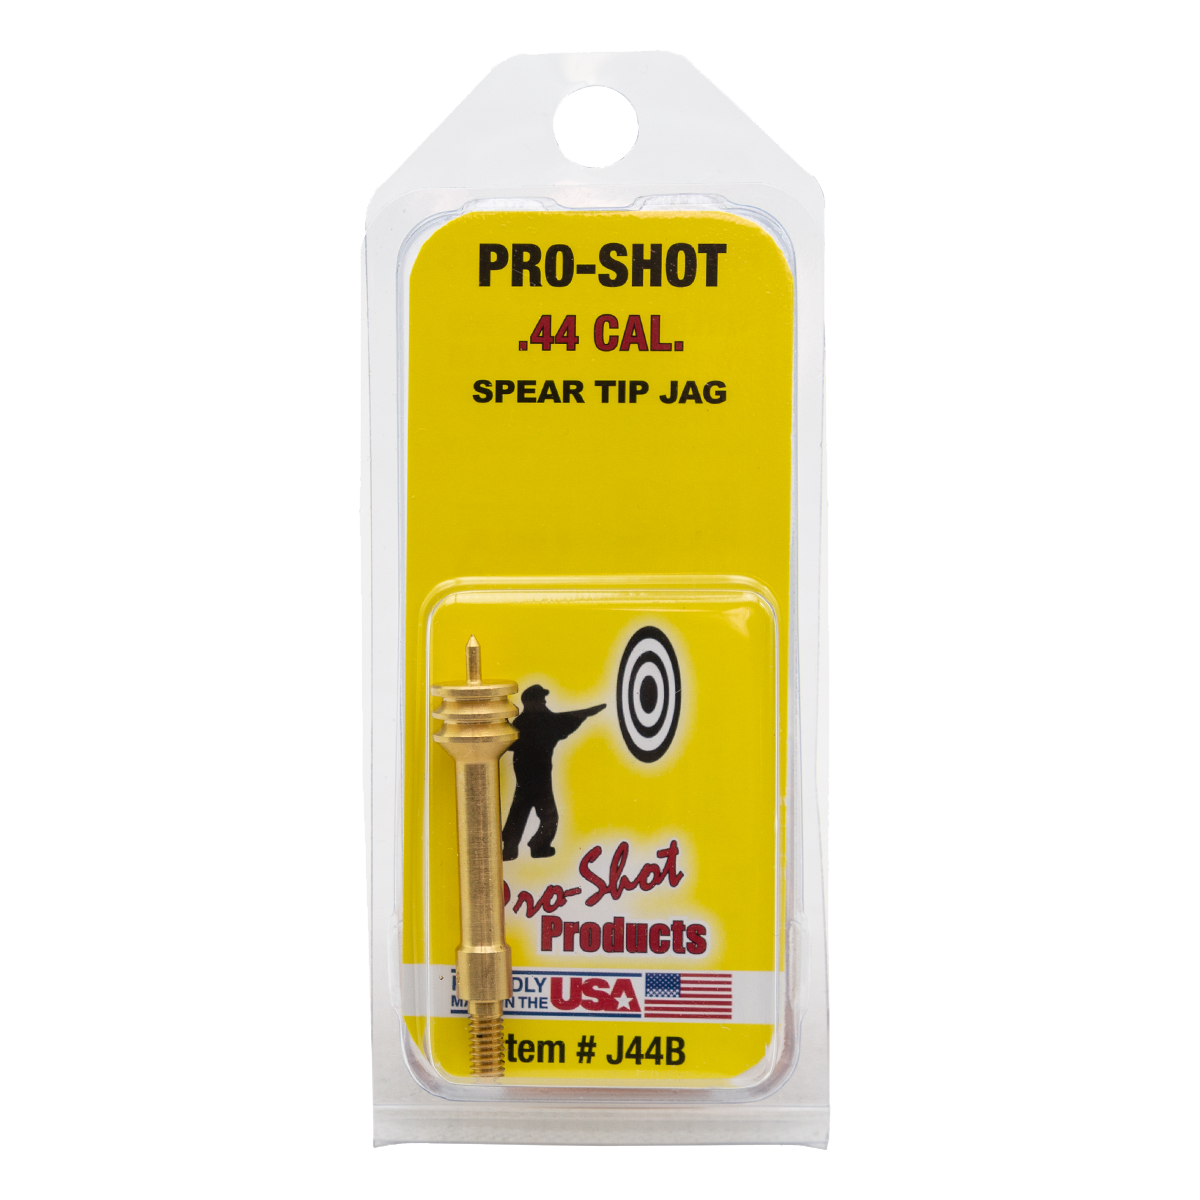 Pro-Shot Spear Tip .44 Cal. Jag